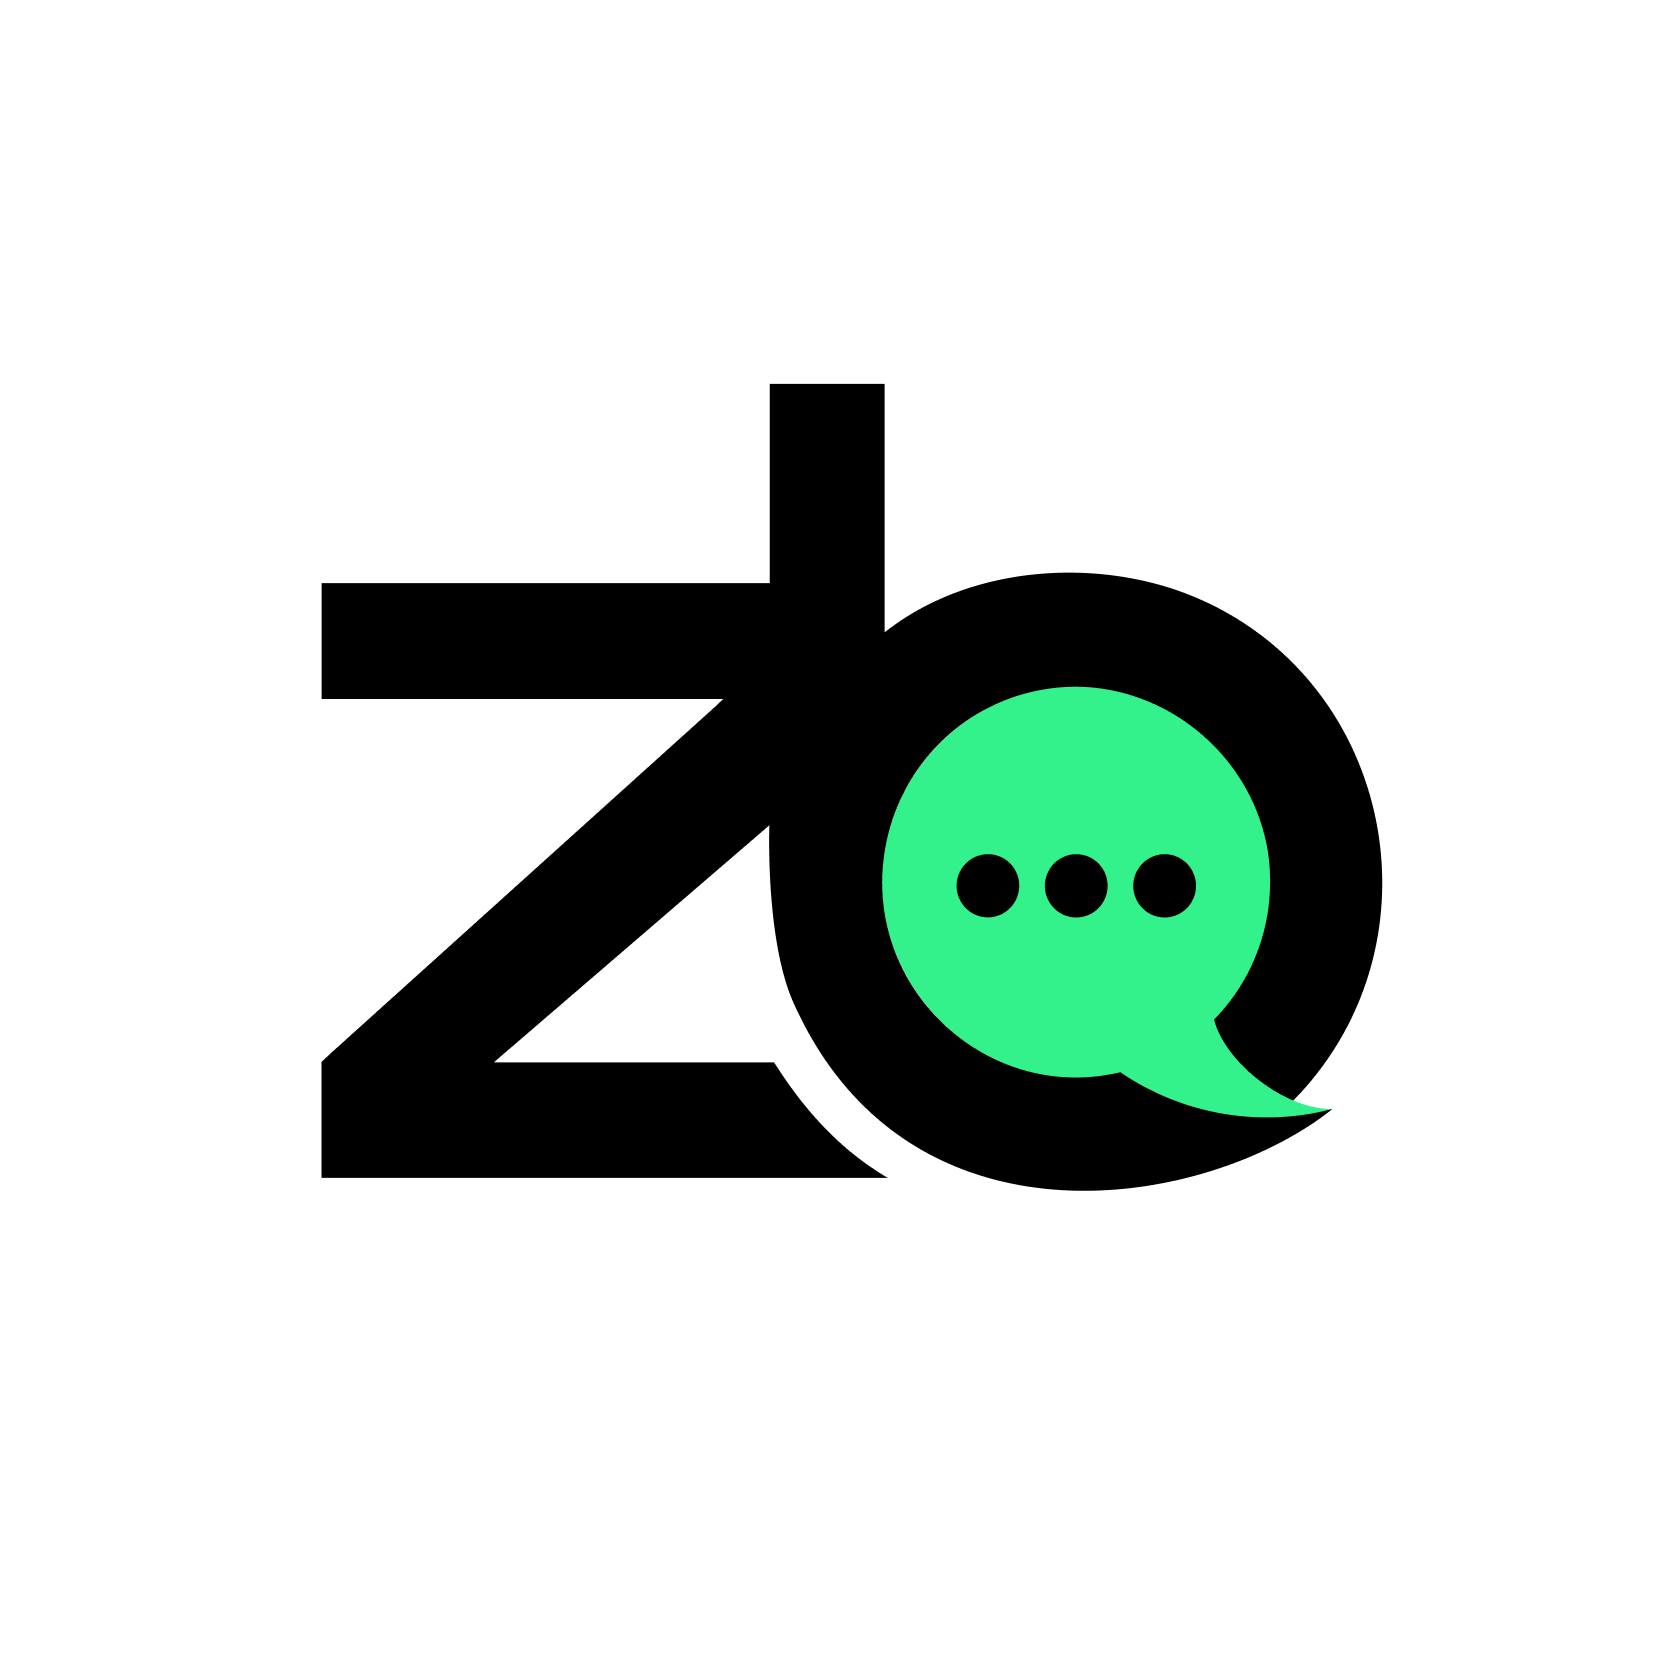 ZB logo square